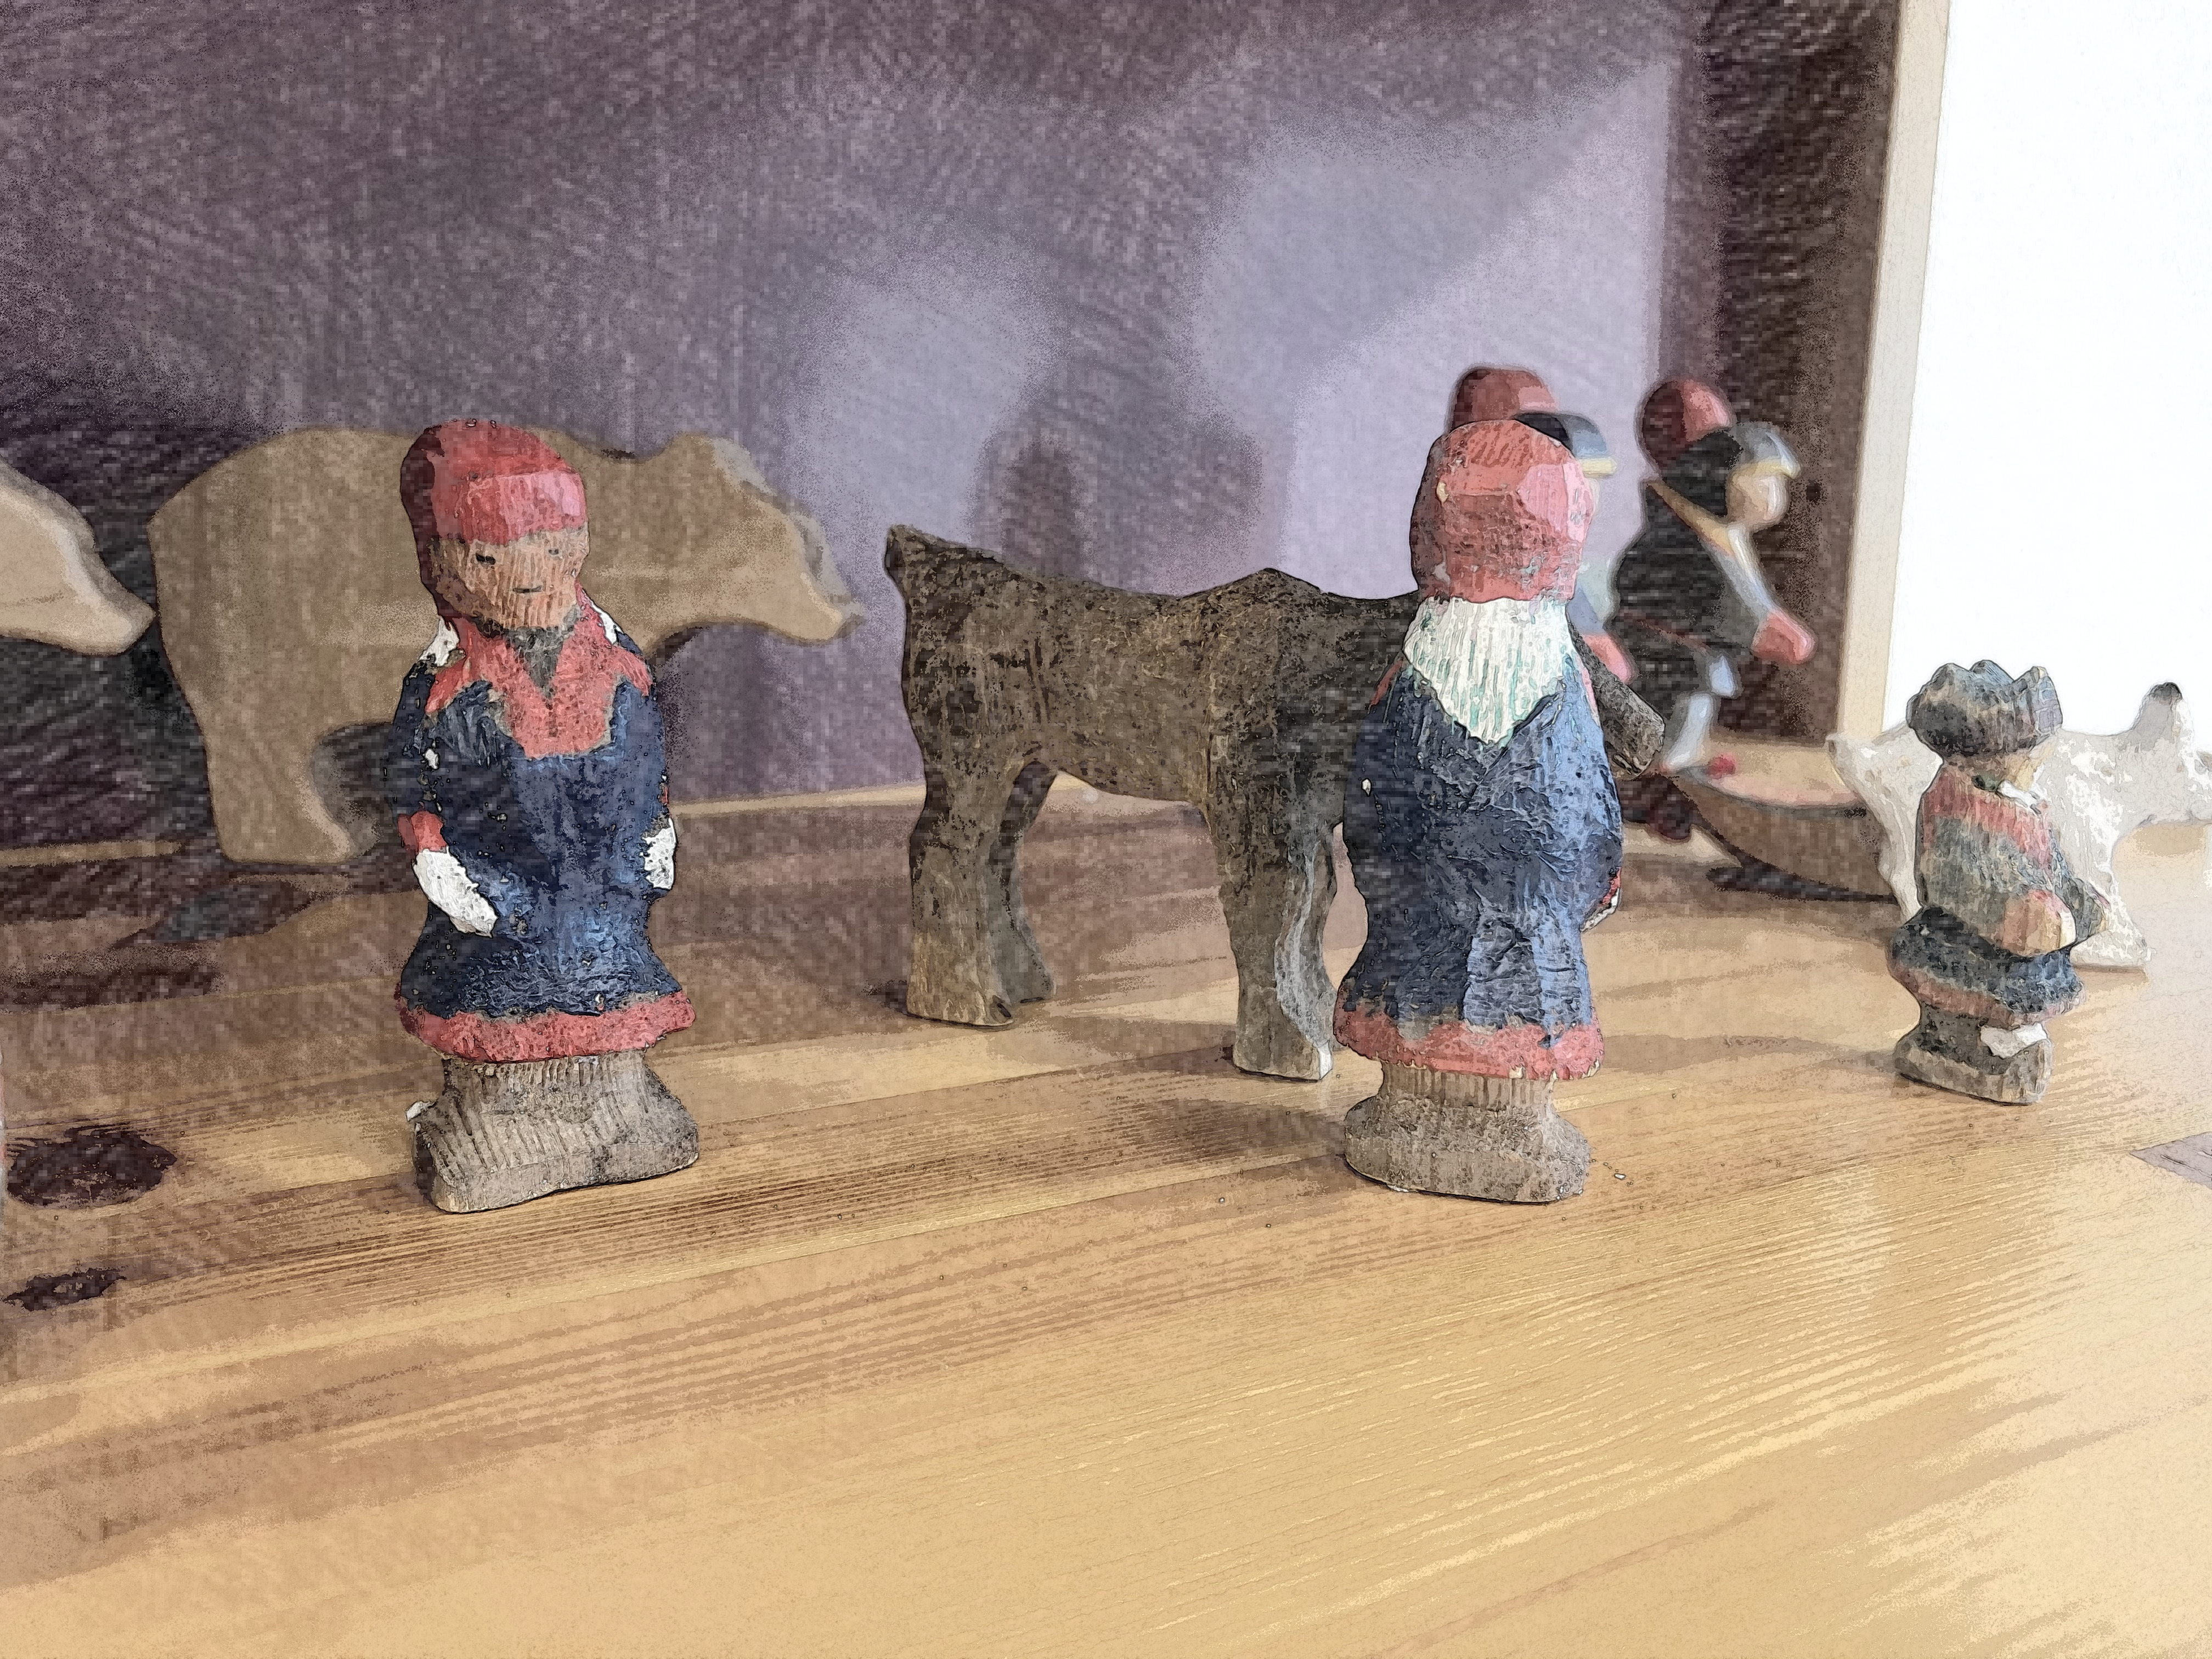 Kuvassa on saamelaislapsen leluja, puisia ihmis- ja eläinhahmoja. Kuva otettu SANKS Norjan Karasjoen yksikön lasten leikkiterapiahuoneesta. Kuva on muokattu piirrosmaiseksi.